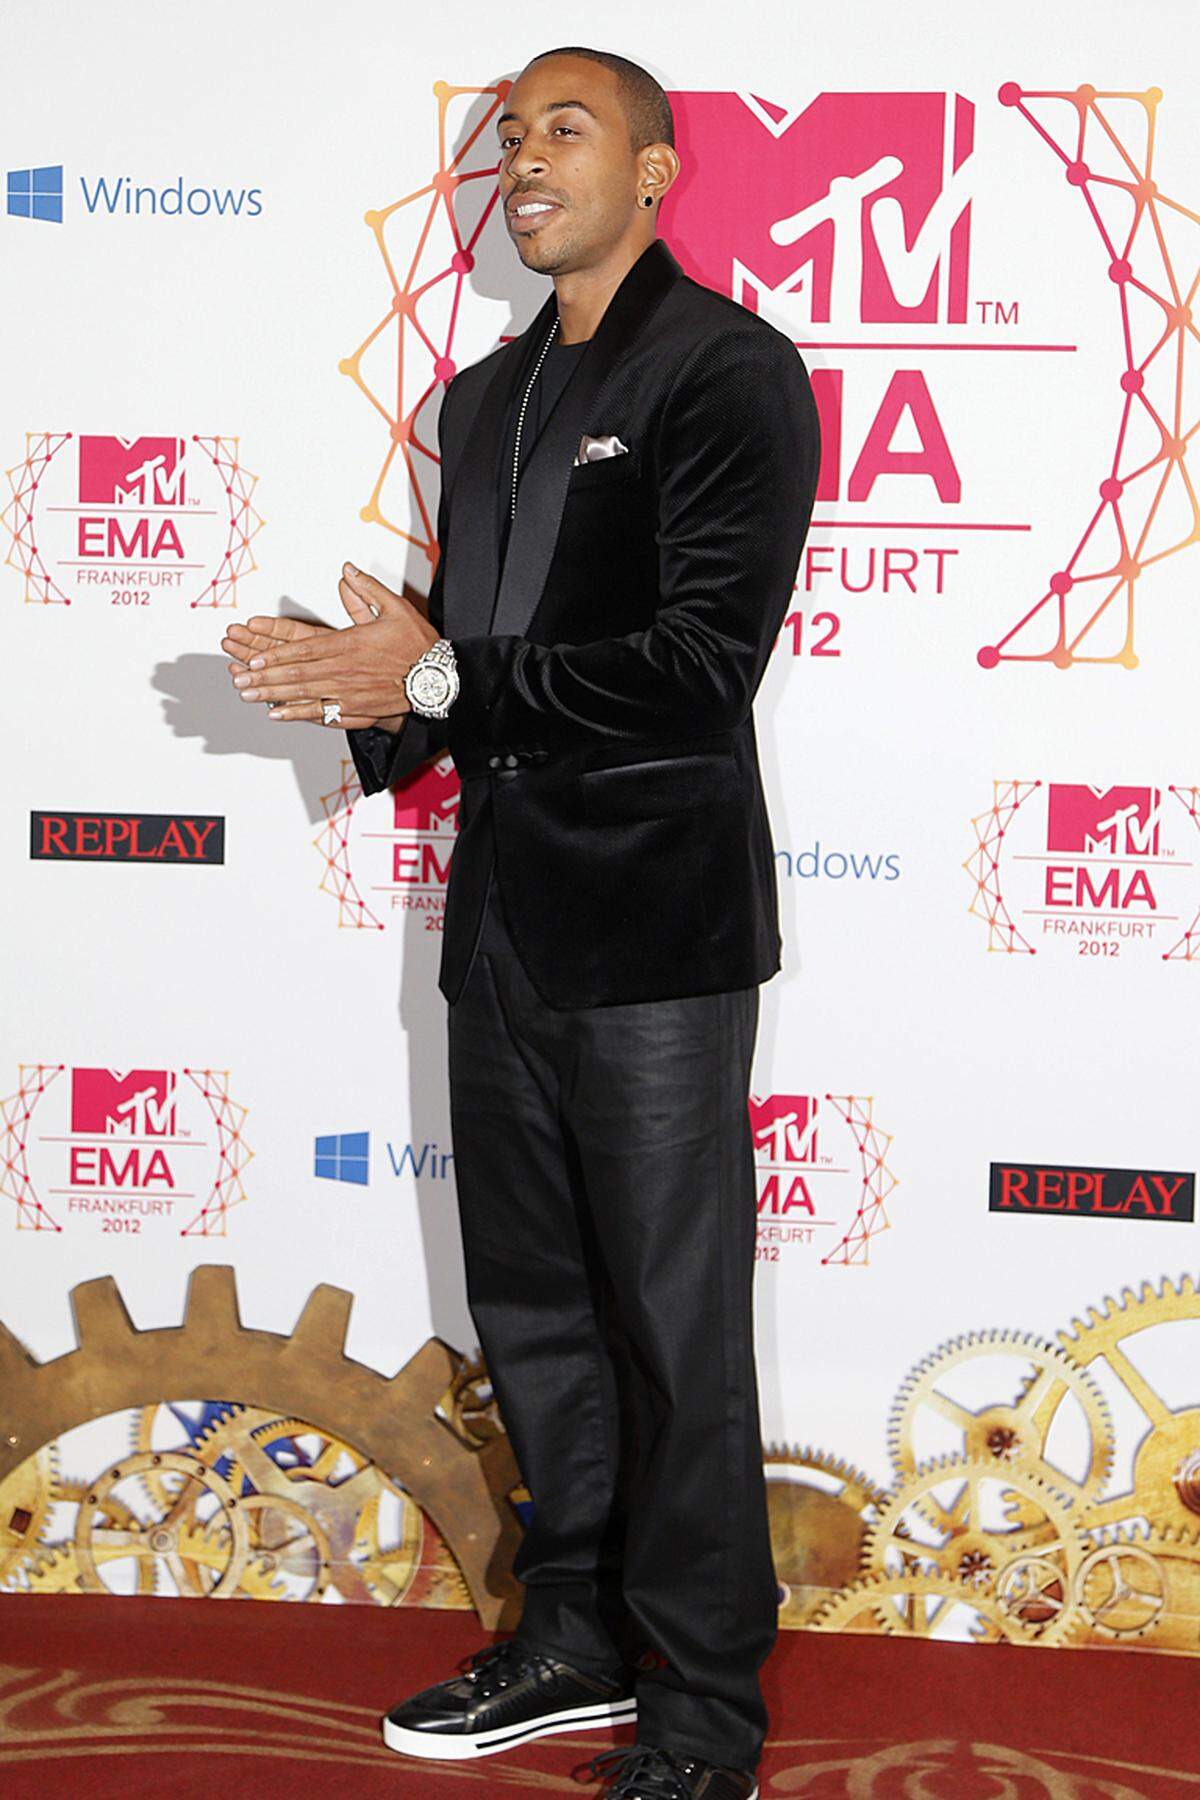 Zu einem späteren Zeitpunkt erhielt Del Rey von Rapper Ludacris den Preis für "Best Alternative". Allerdings in einem Backstage-Segment.